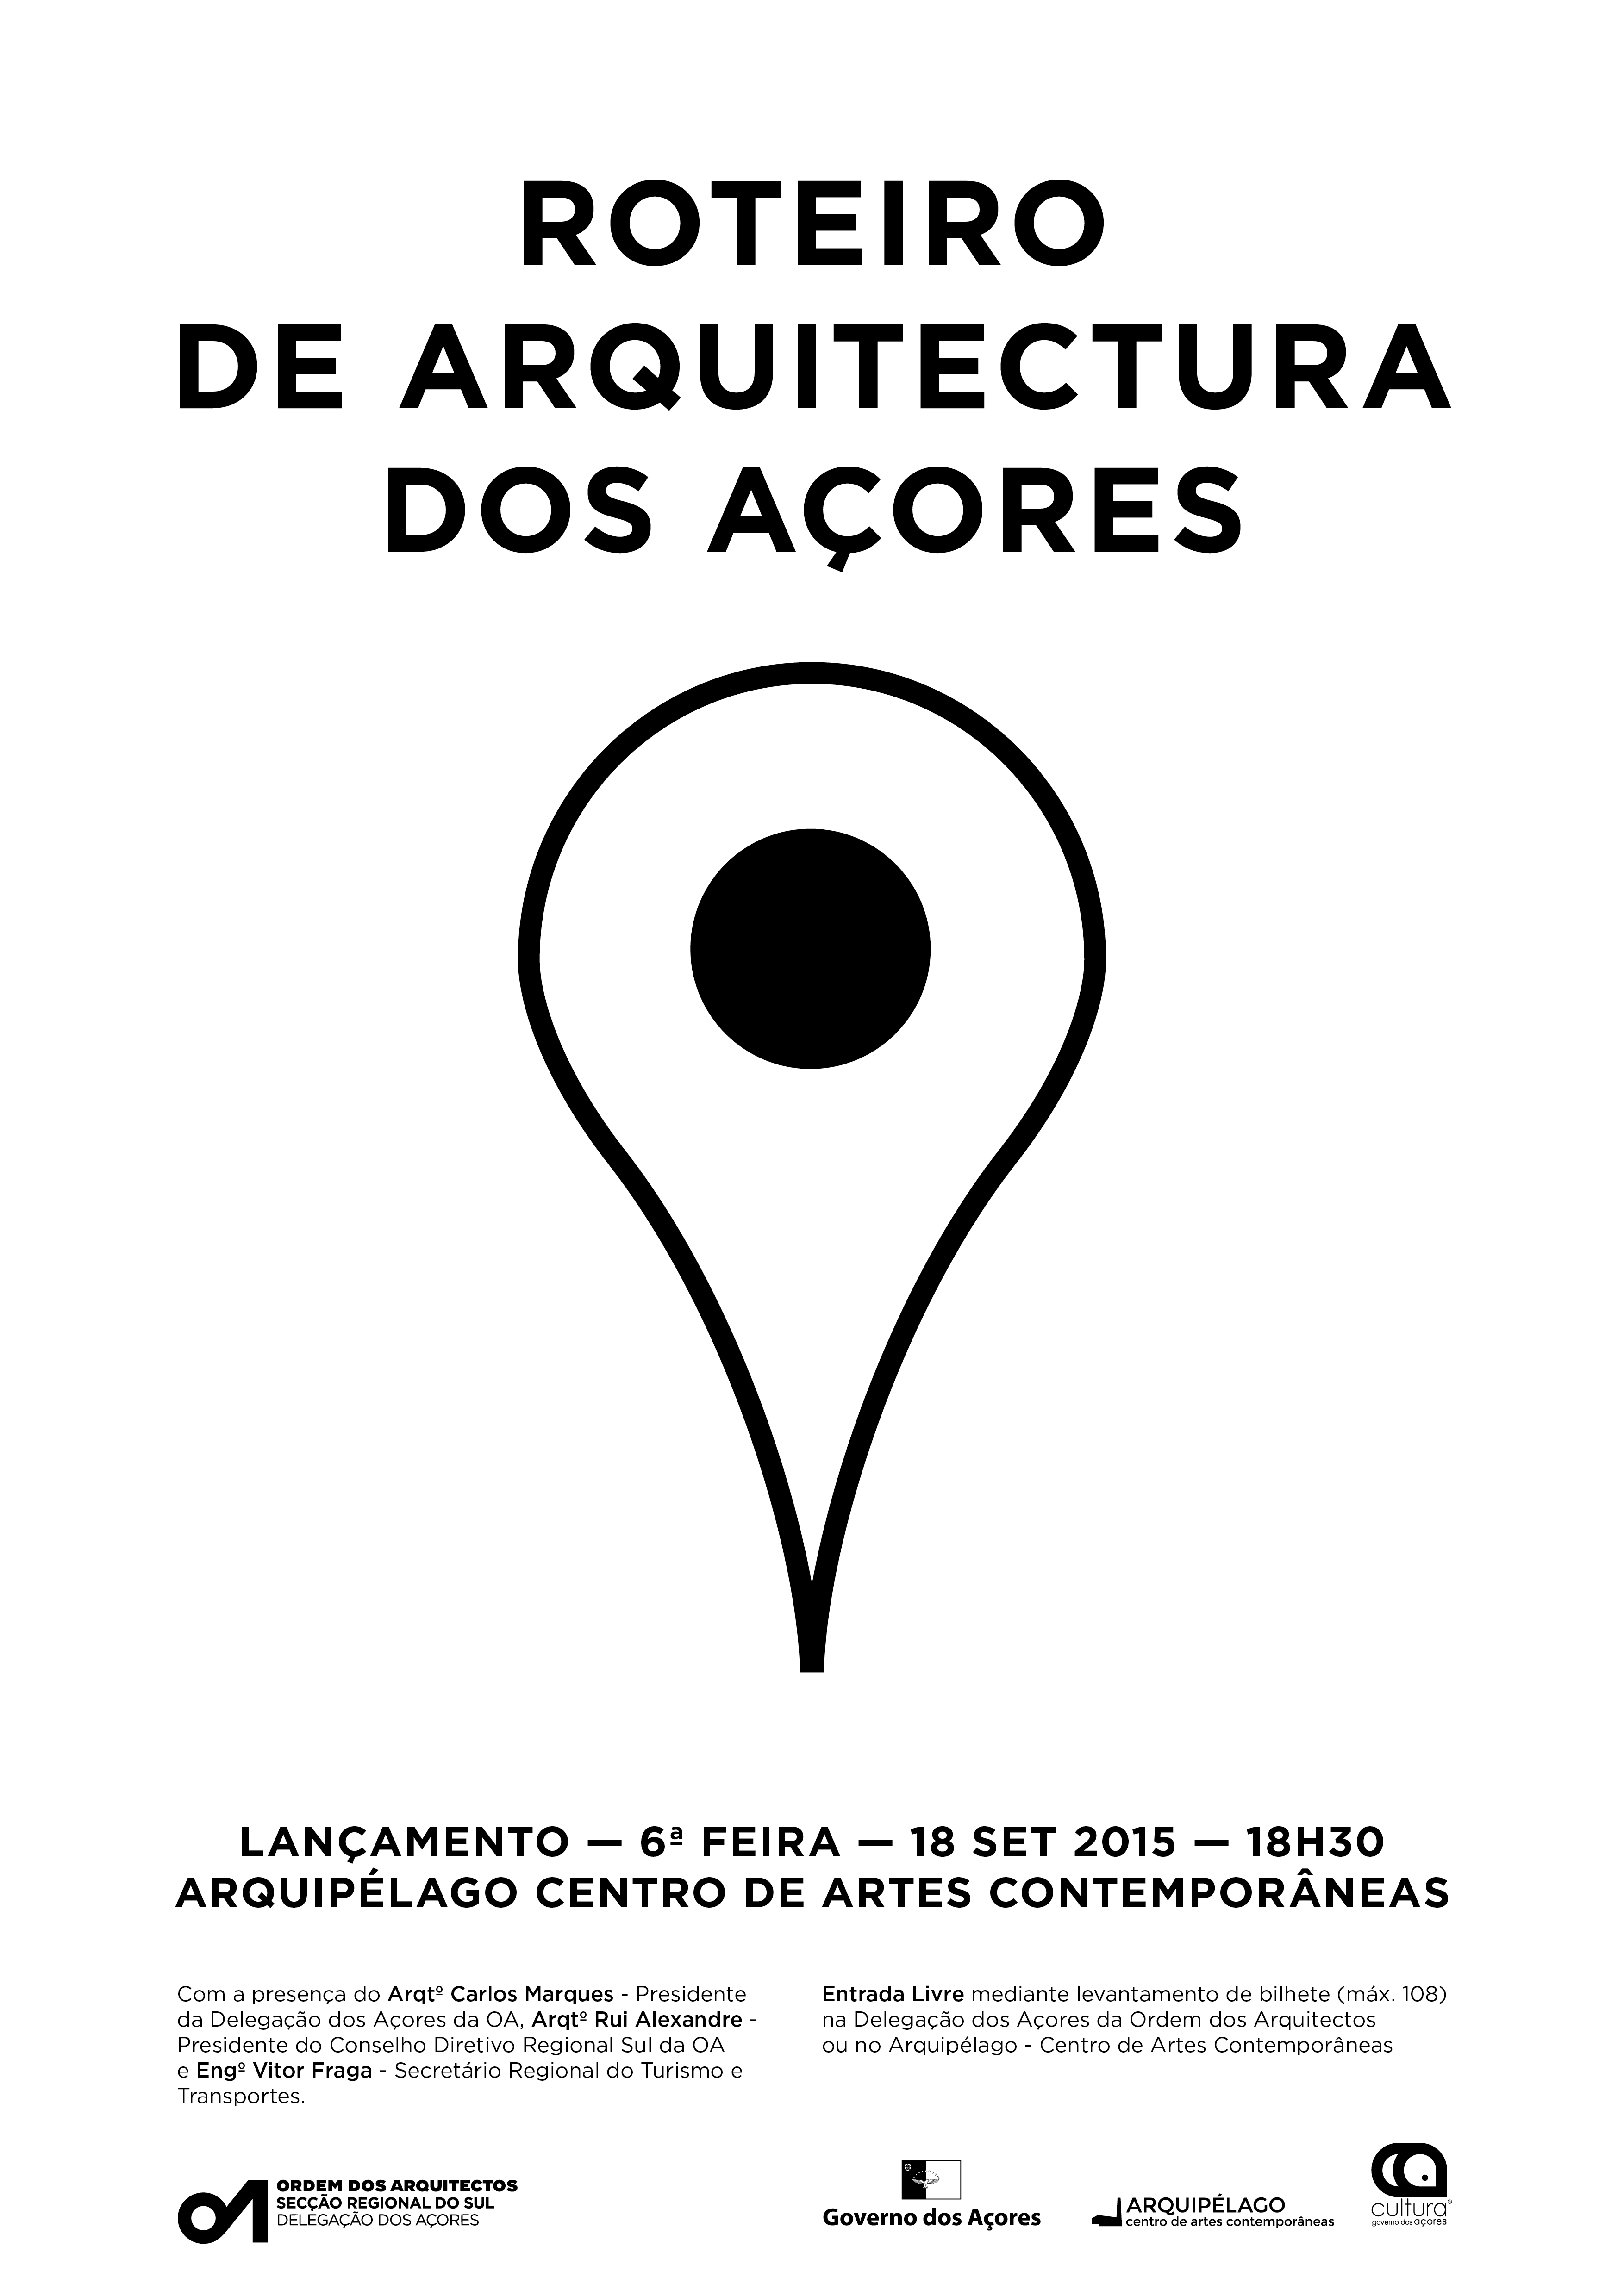 Lançamento do site do roteiro de arquitetura dos Açores